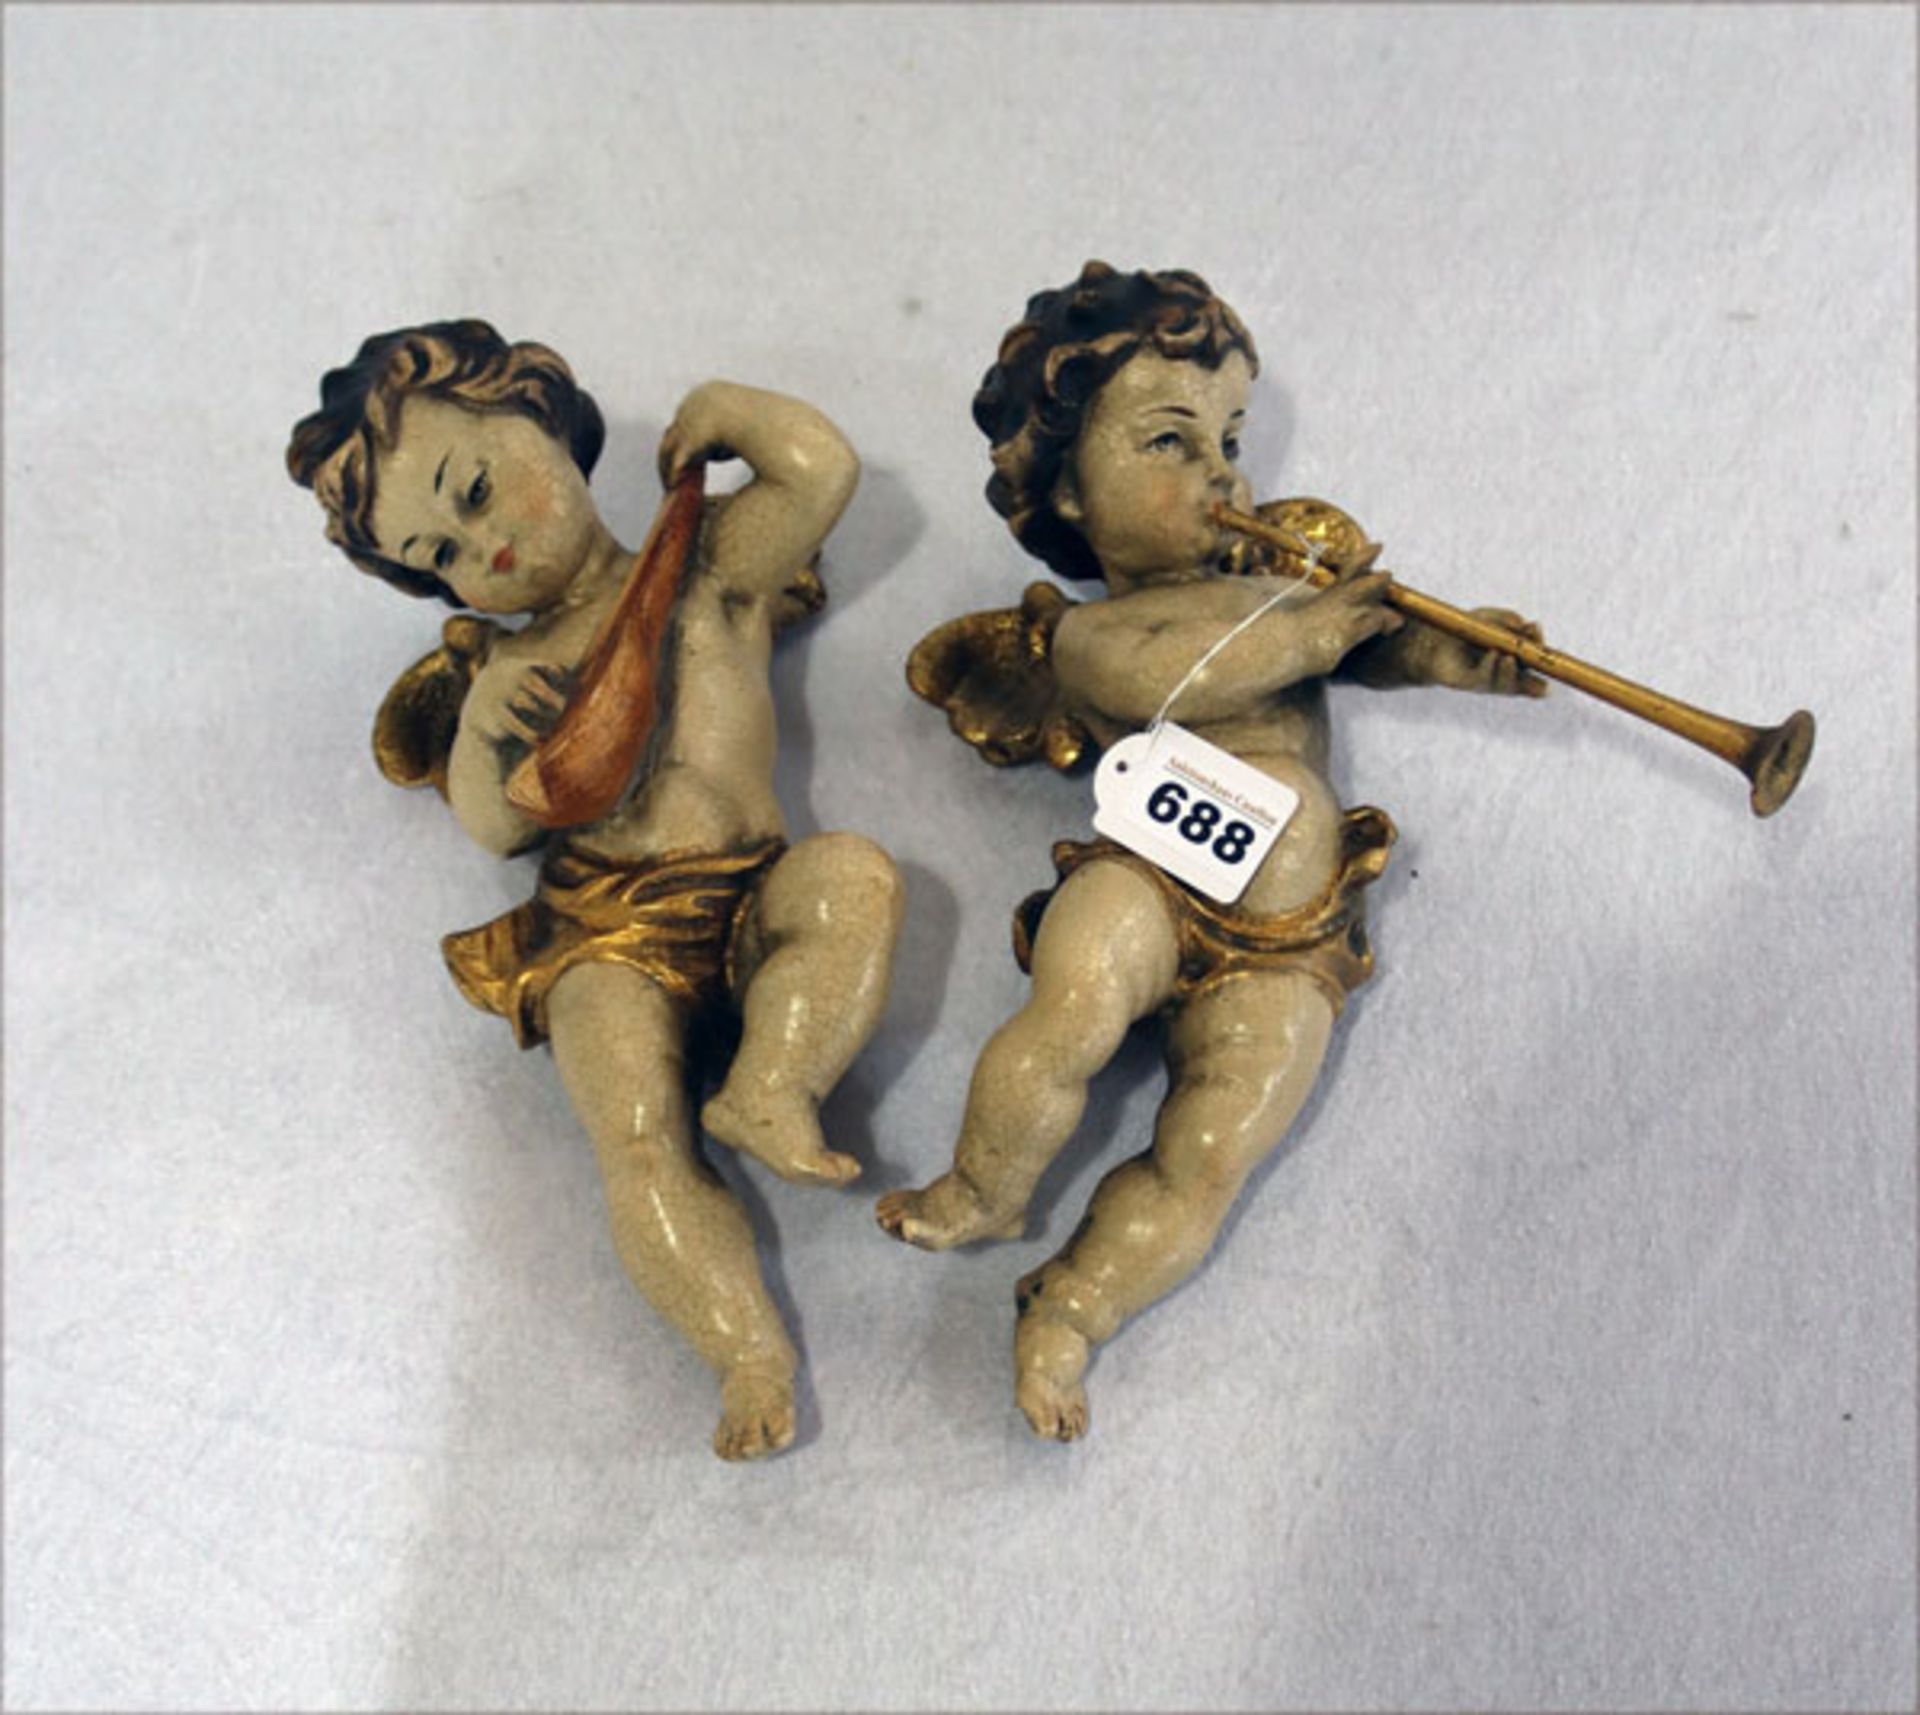 2 Holzfiguren 'Musizierende Engel', farbig gefaßt, teils beschädigt und berieben, H 30 cm